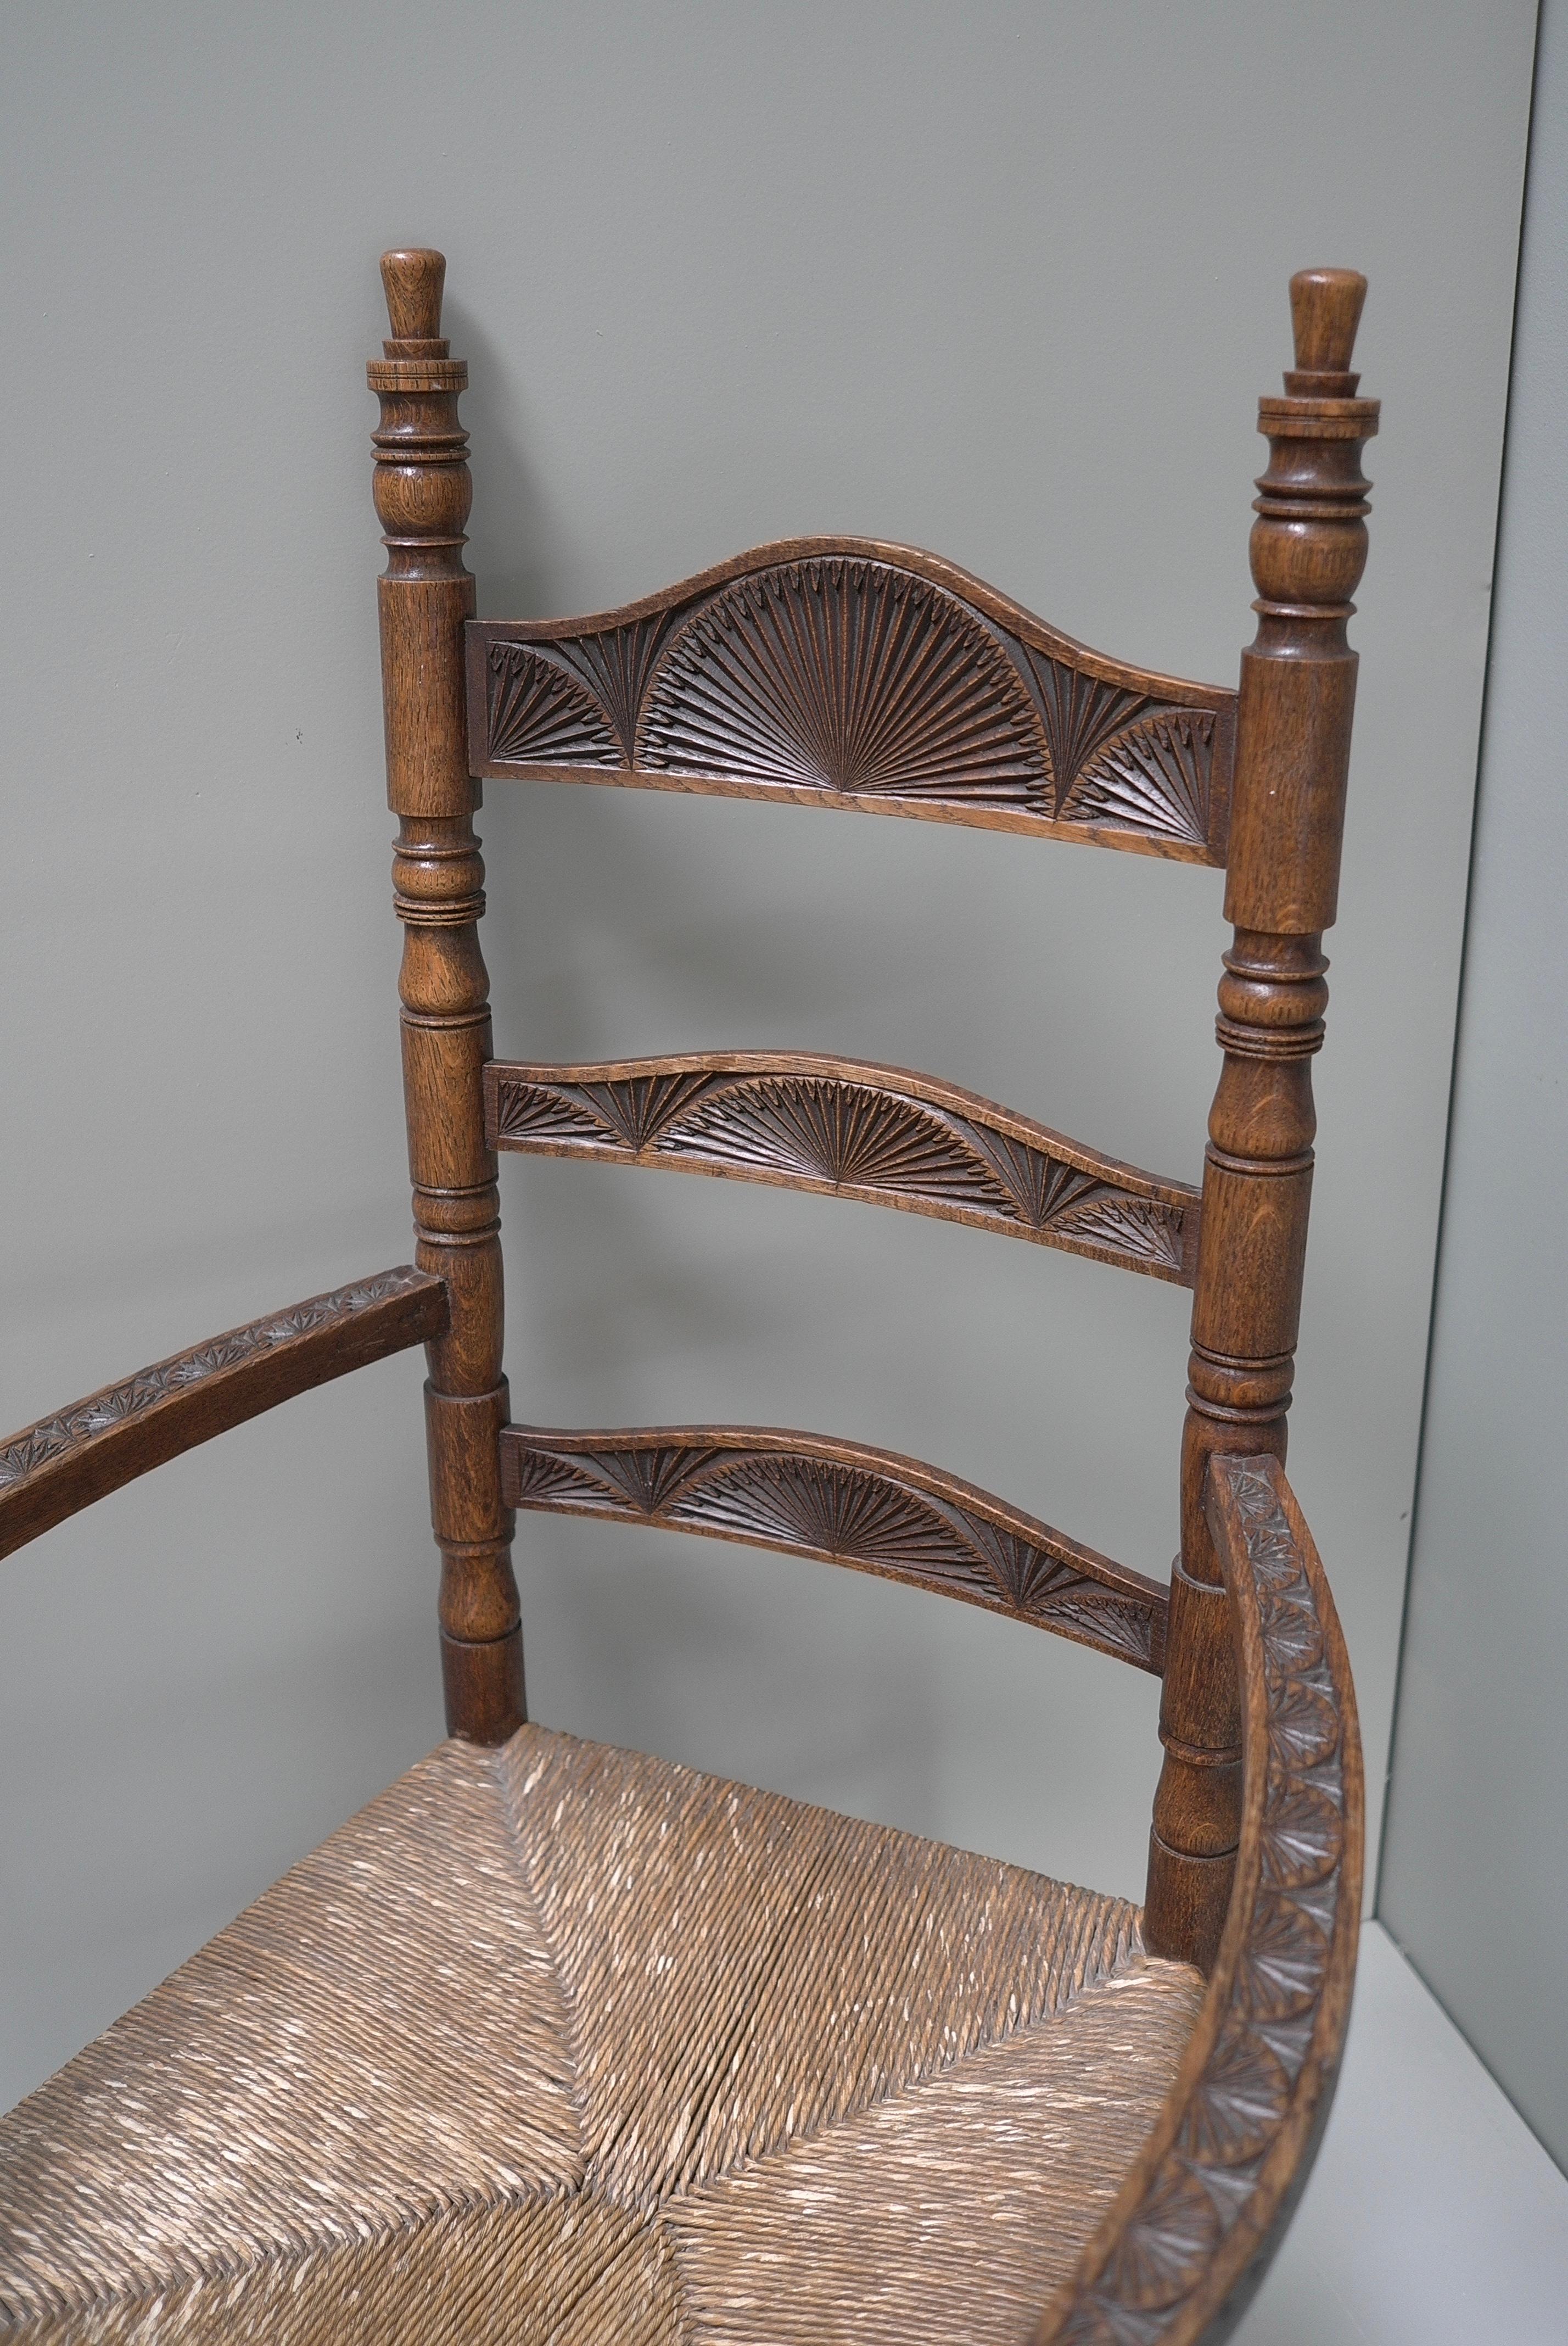 Chaise à bouton en chêne, richement décorée et sculptée à la main, d'après la forme du XVIIe siècle, vers 1910-1940.

La chaise Knob, avec son assise en jonc, est un archétype néerlandais. Cette chaise était présente dans de nombreux foyers